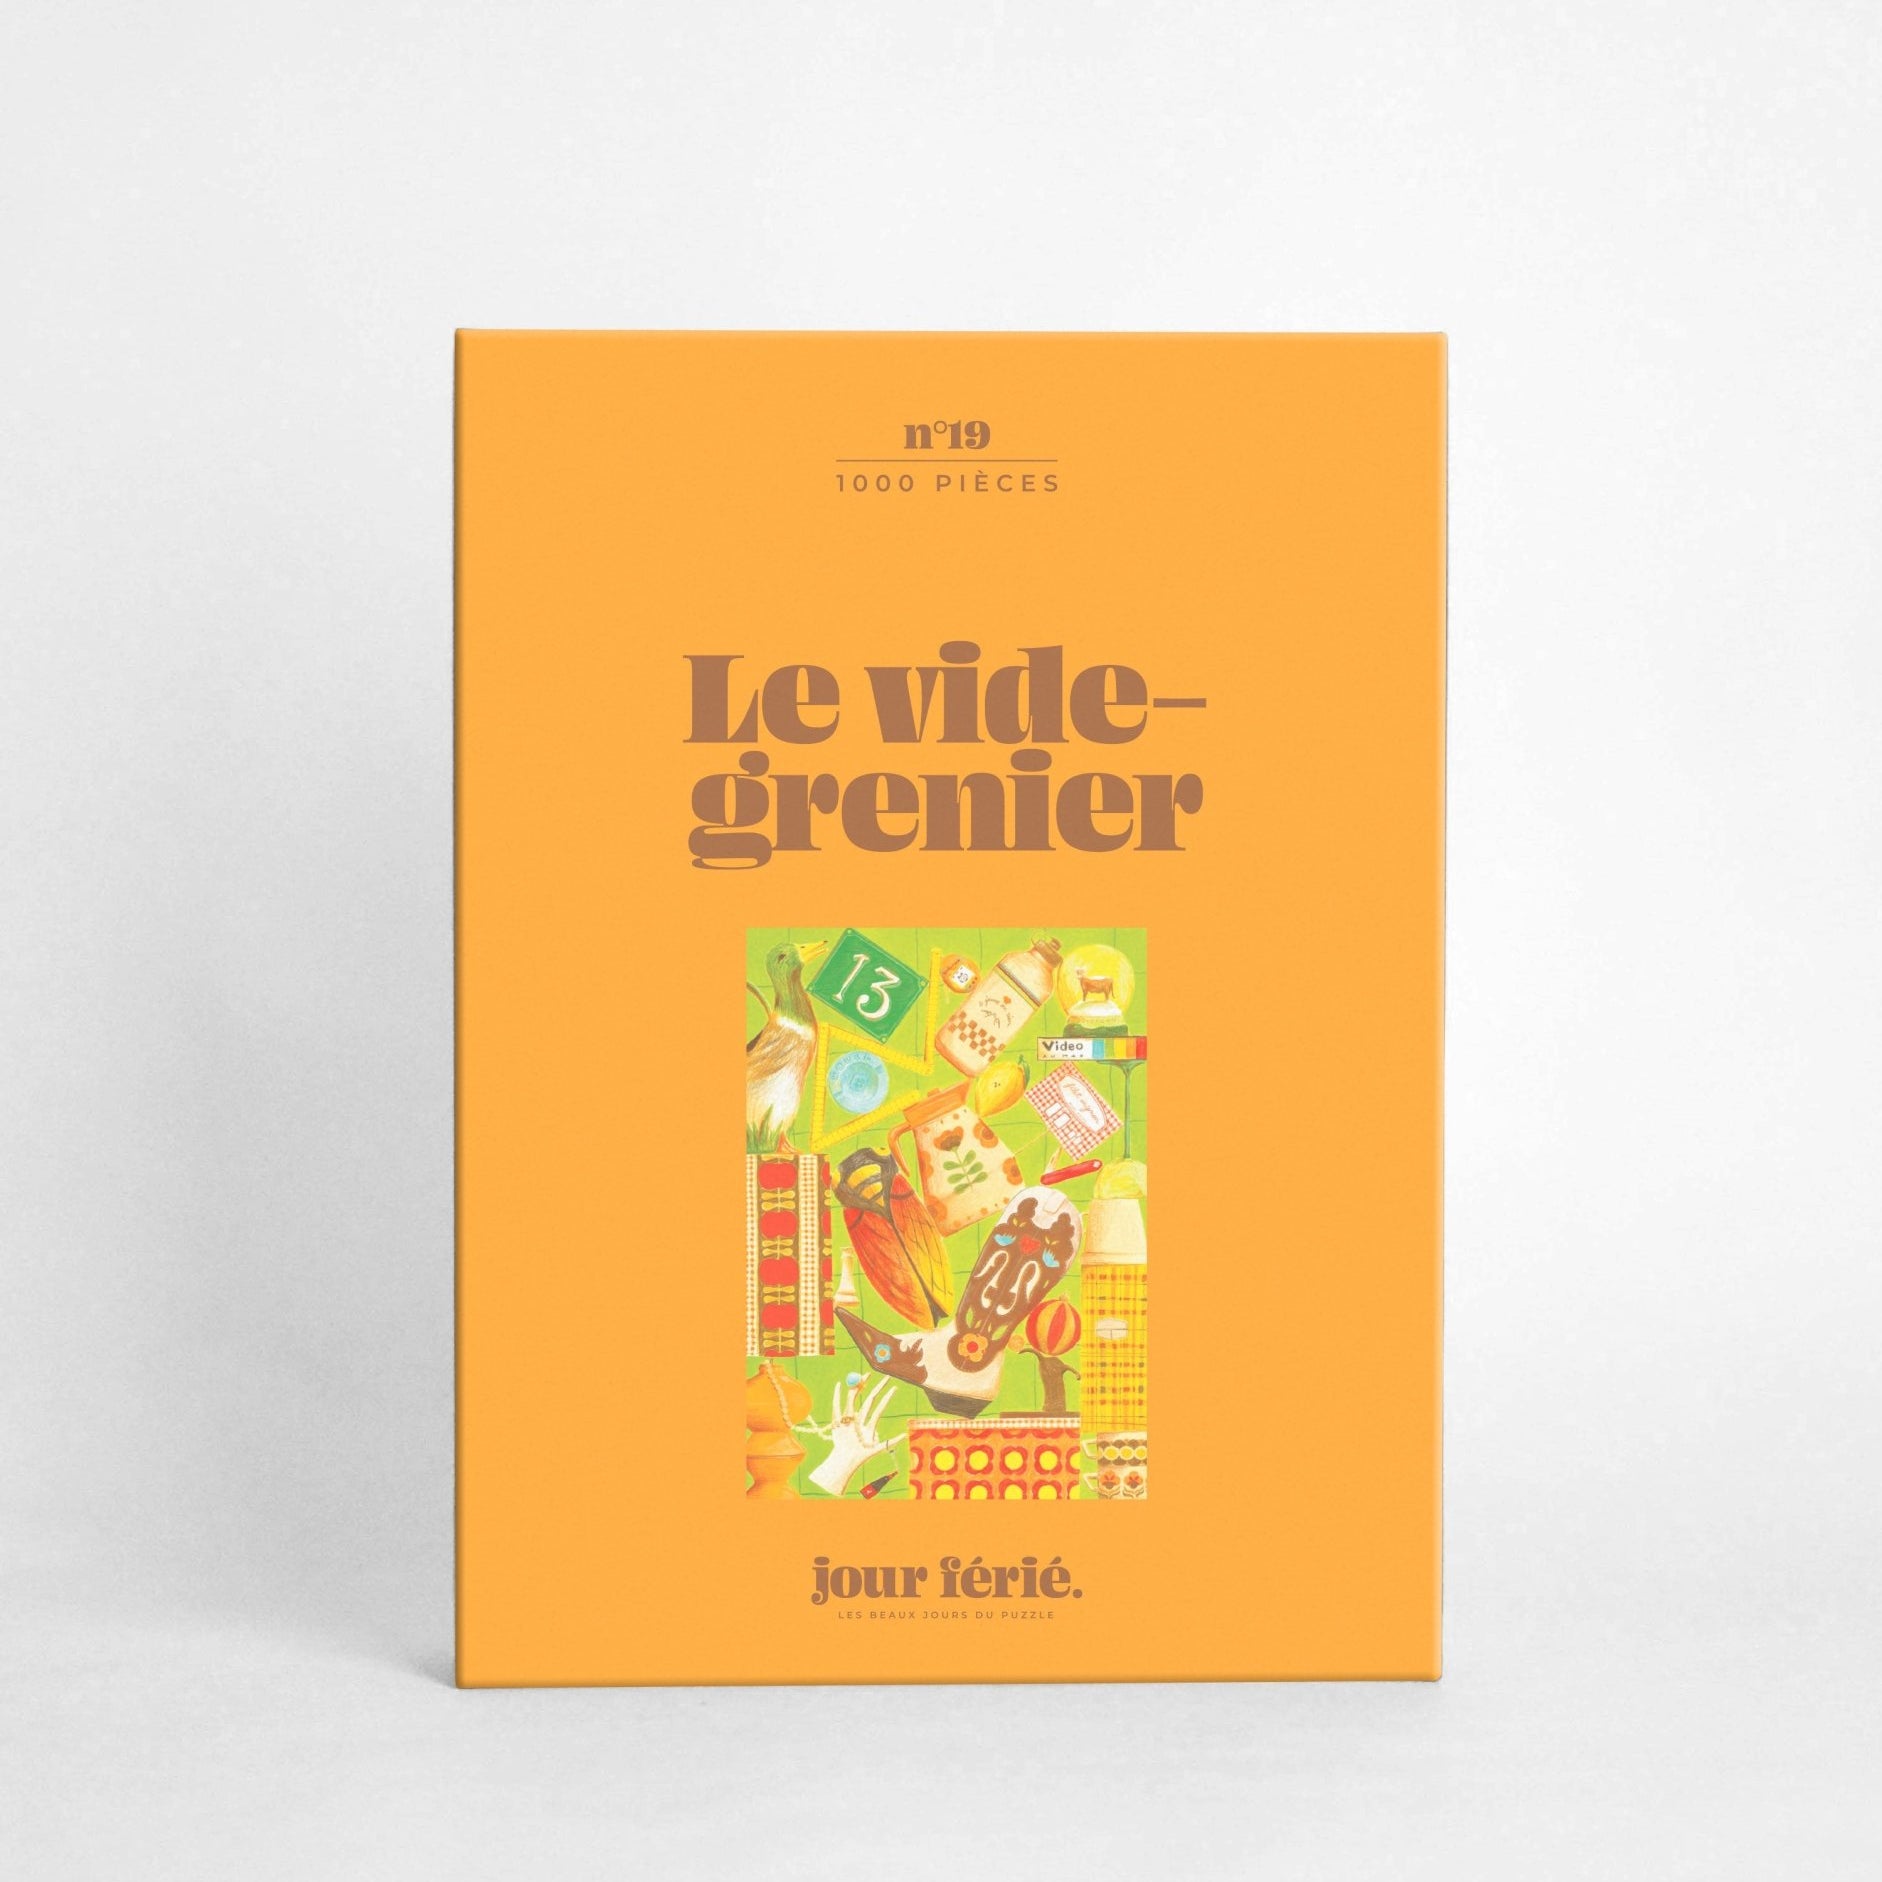 Le vide-grenier - Jour férié - Puzzle éco-conçu 1000 pièces - Boutique We Are Paris